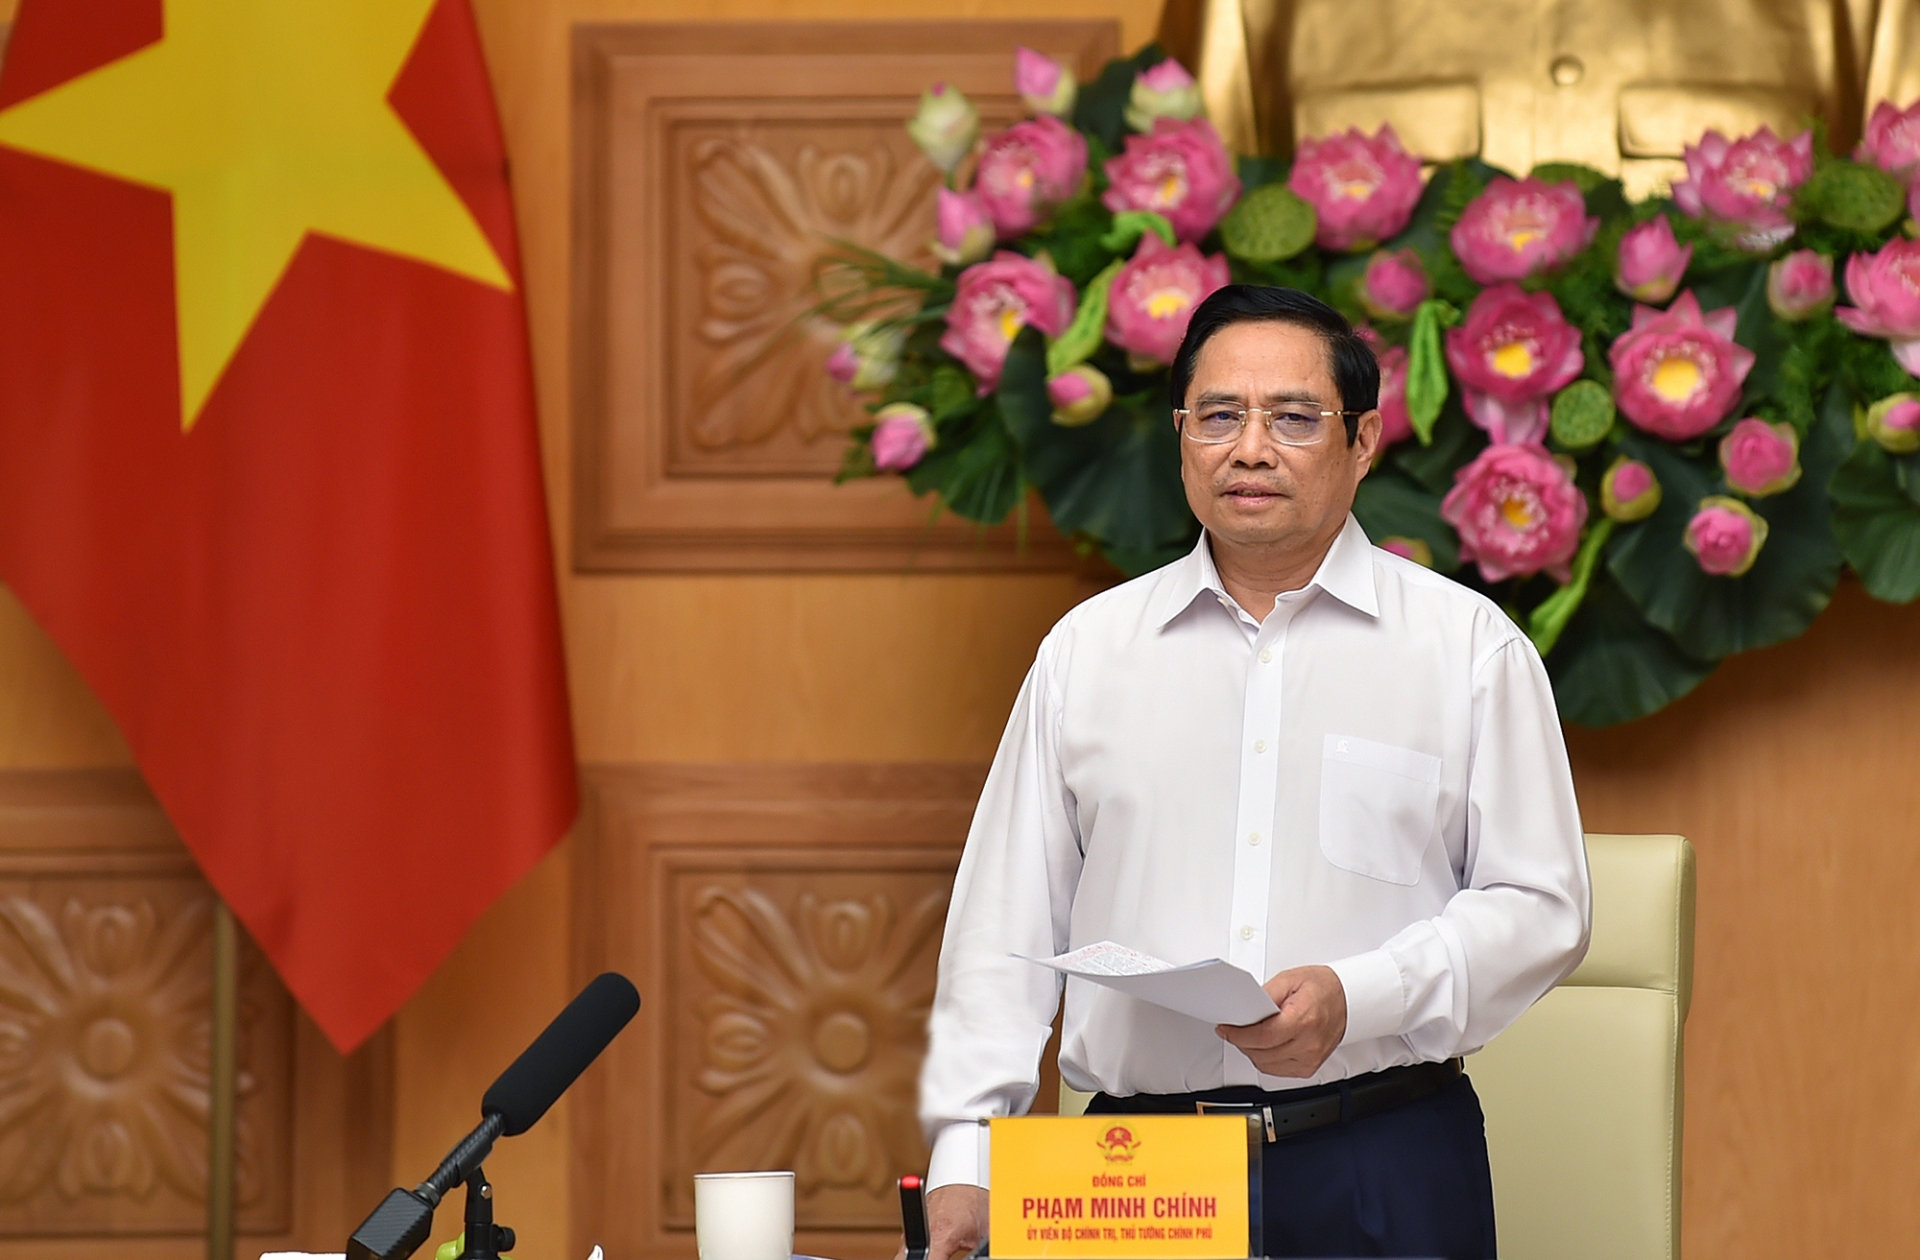 Thủ tướng khẳng định Chính phủ Việt Nam luôn sẵn sàng tạo điều kiện và đồng hành để các doanh nghiệp EU đầu tư, kinh doanh thuận lợi tại Việt Nam